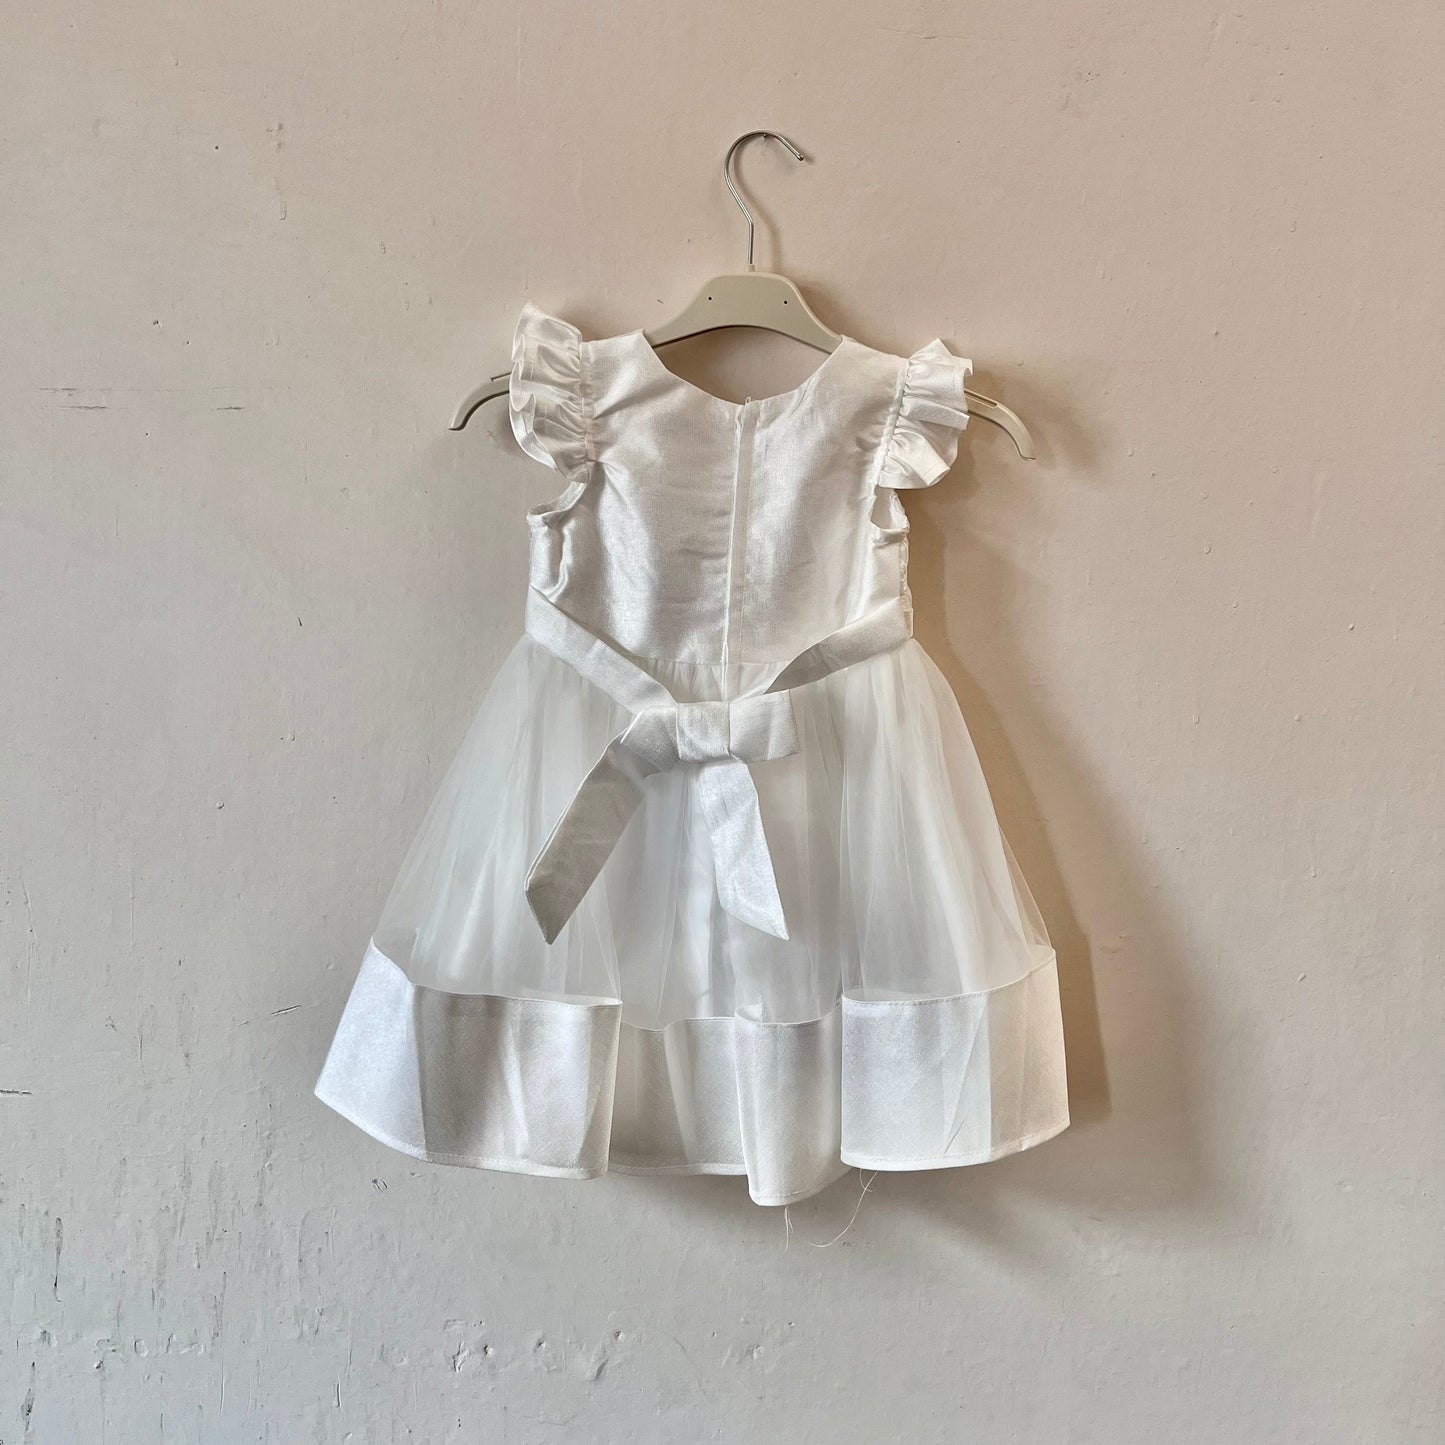 Dívčí bílé krajkované šaty s mašlí visící na věšáku přední stranou ke zdi